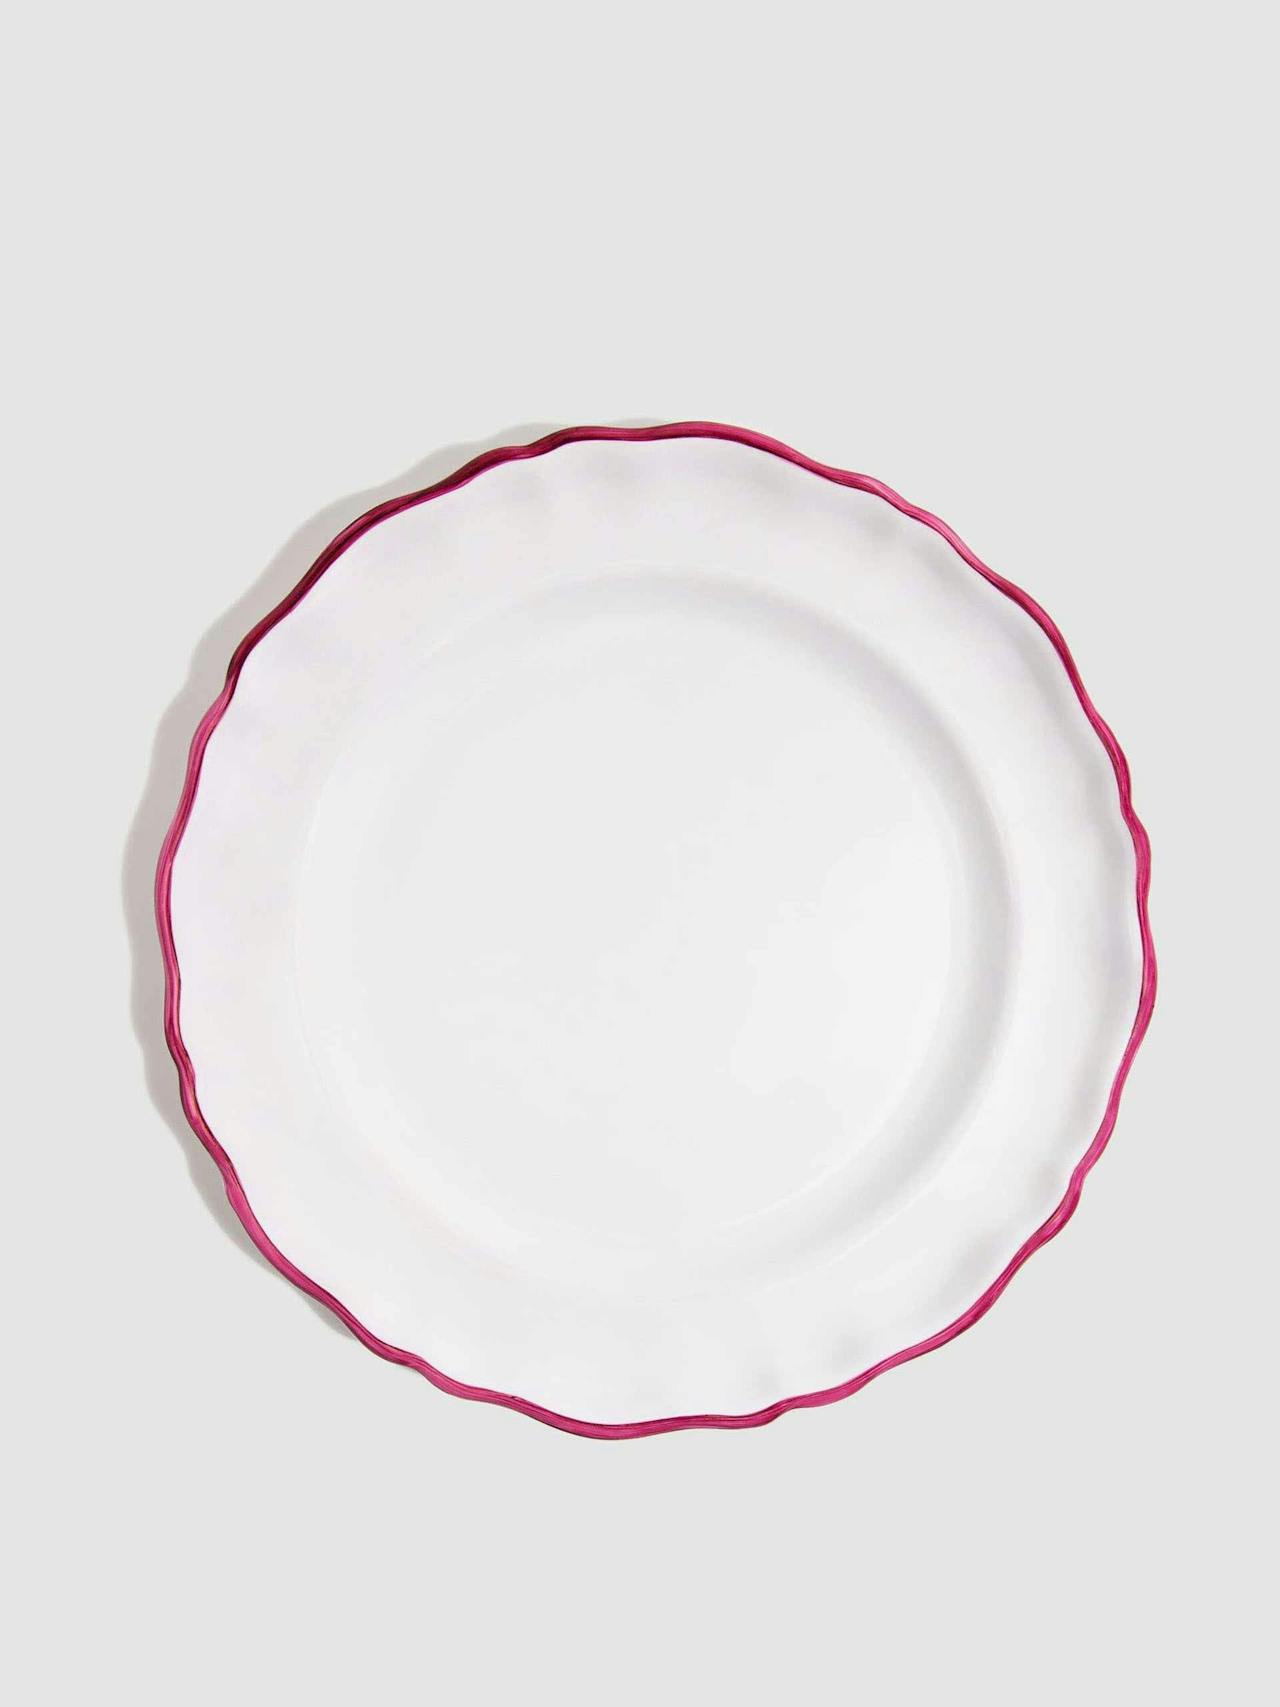 L'Horizon framboise dinner plate